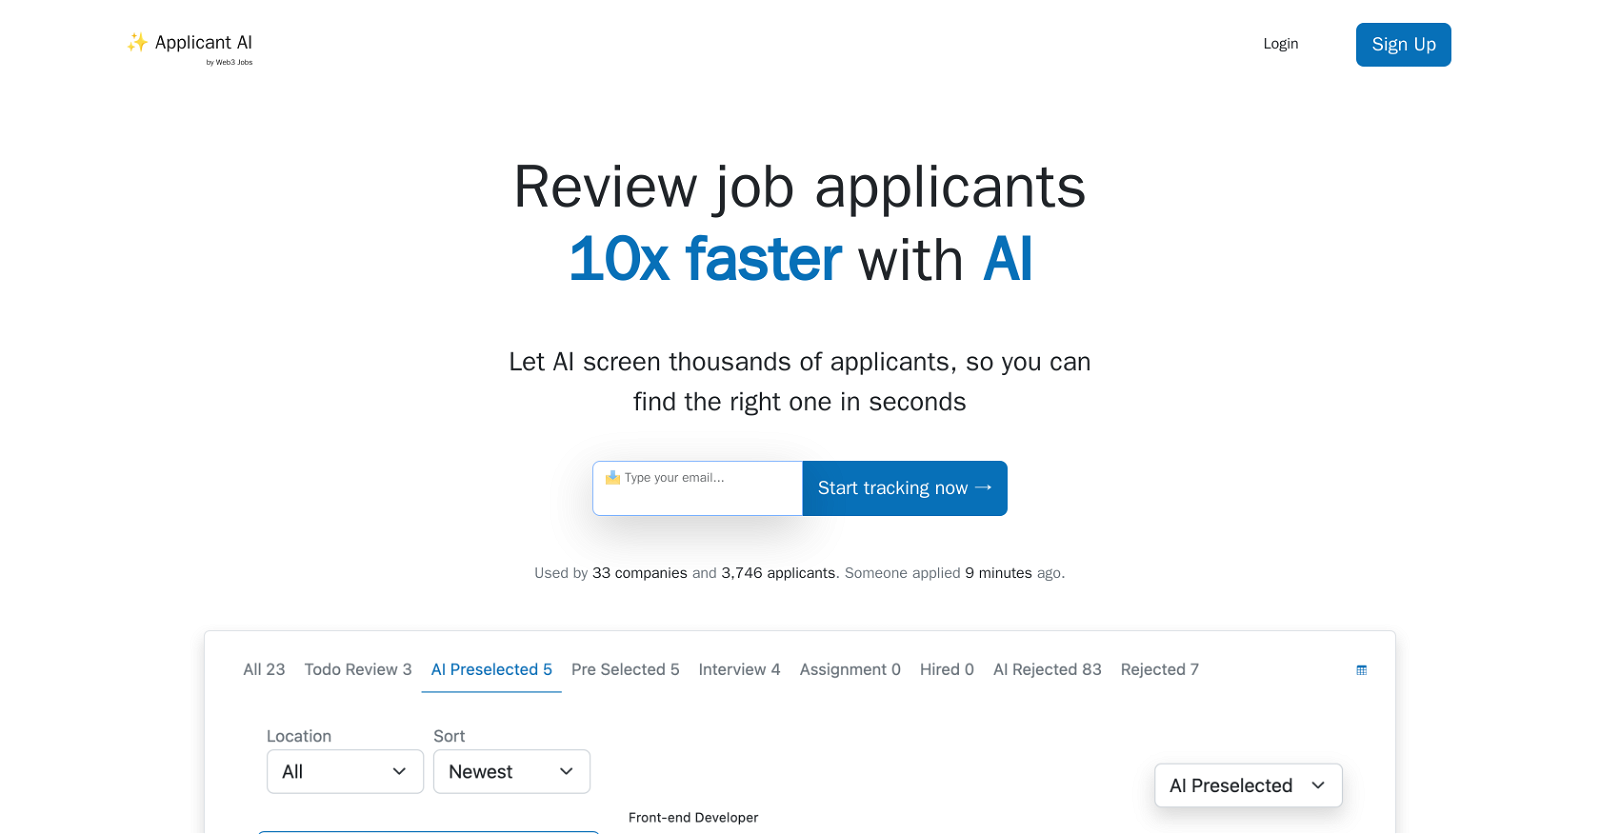 Applicant AI website